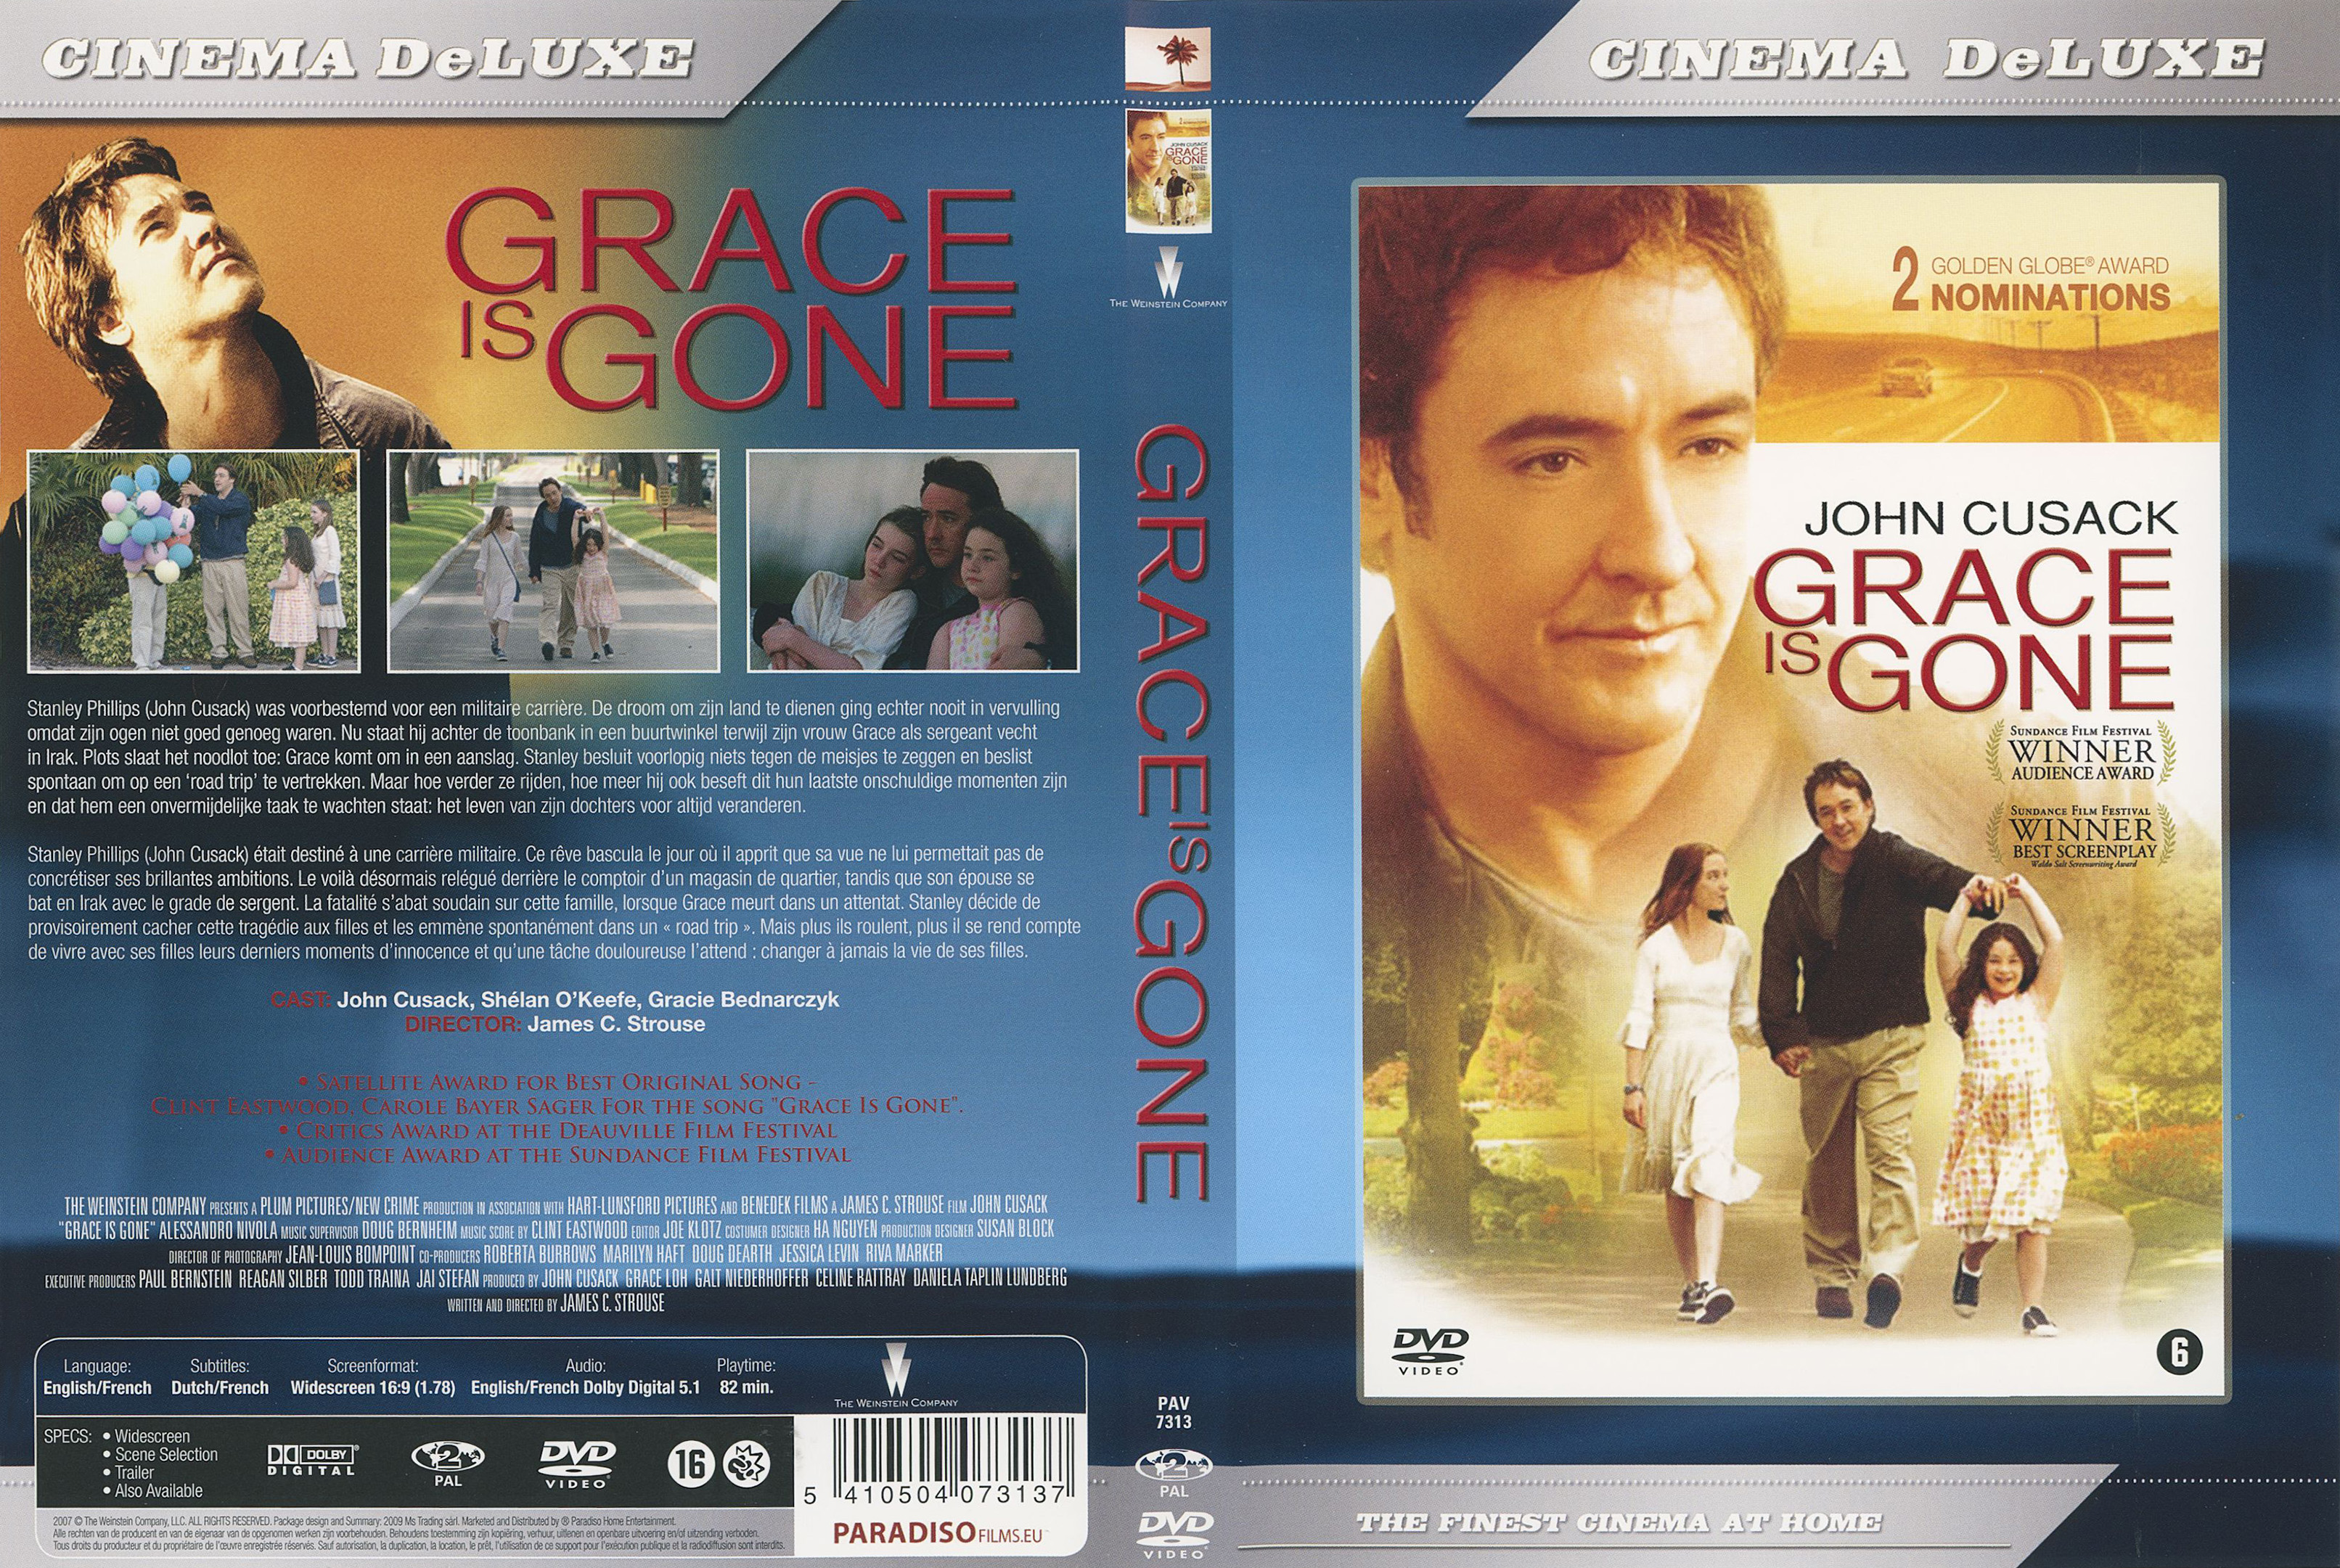 Jaquette DVD Grace is Gone v2